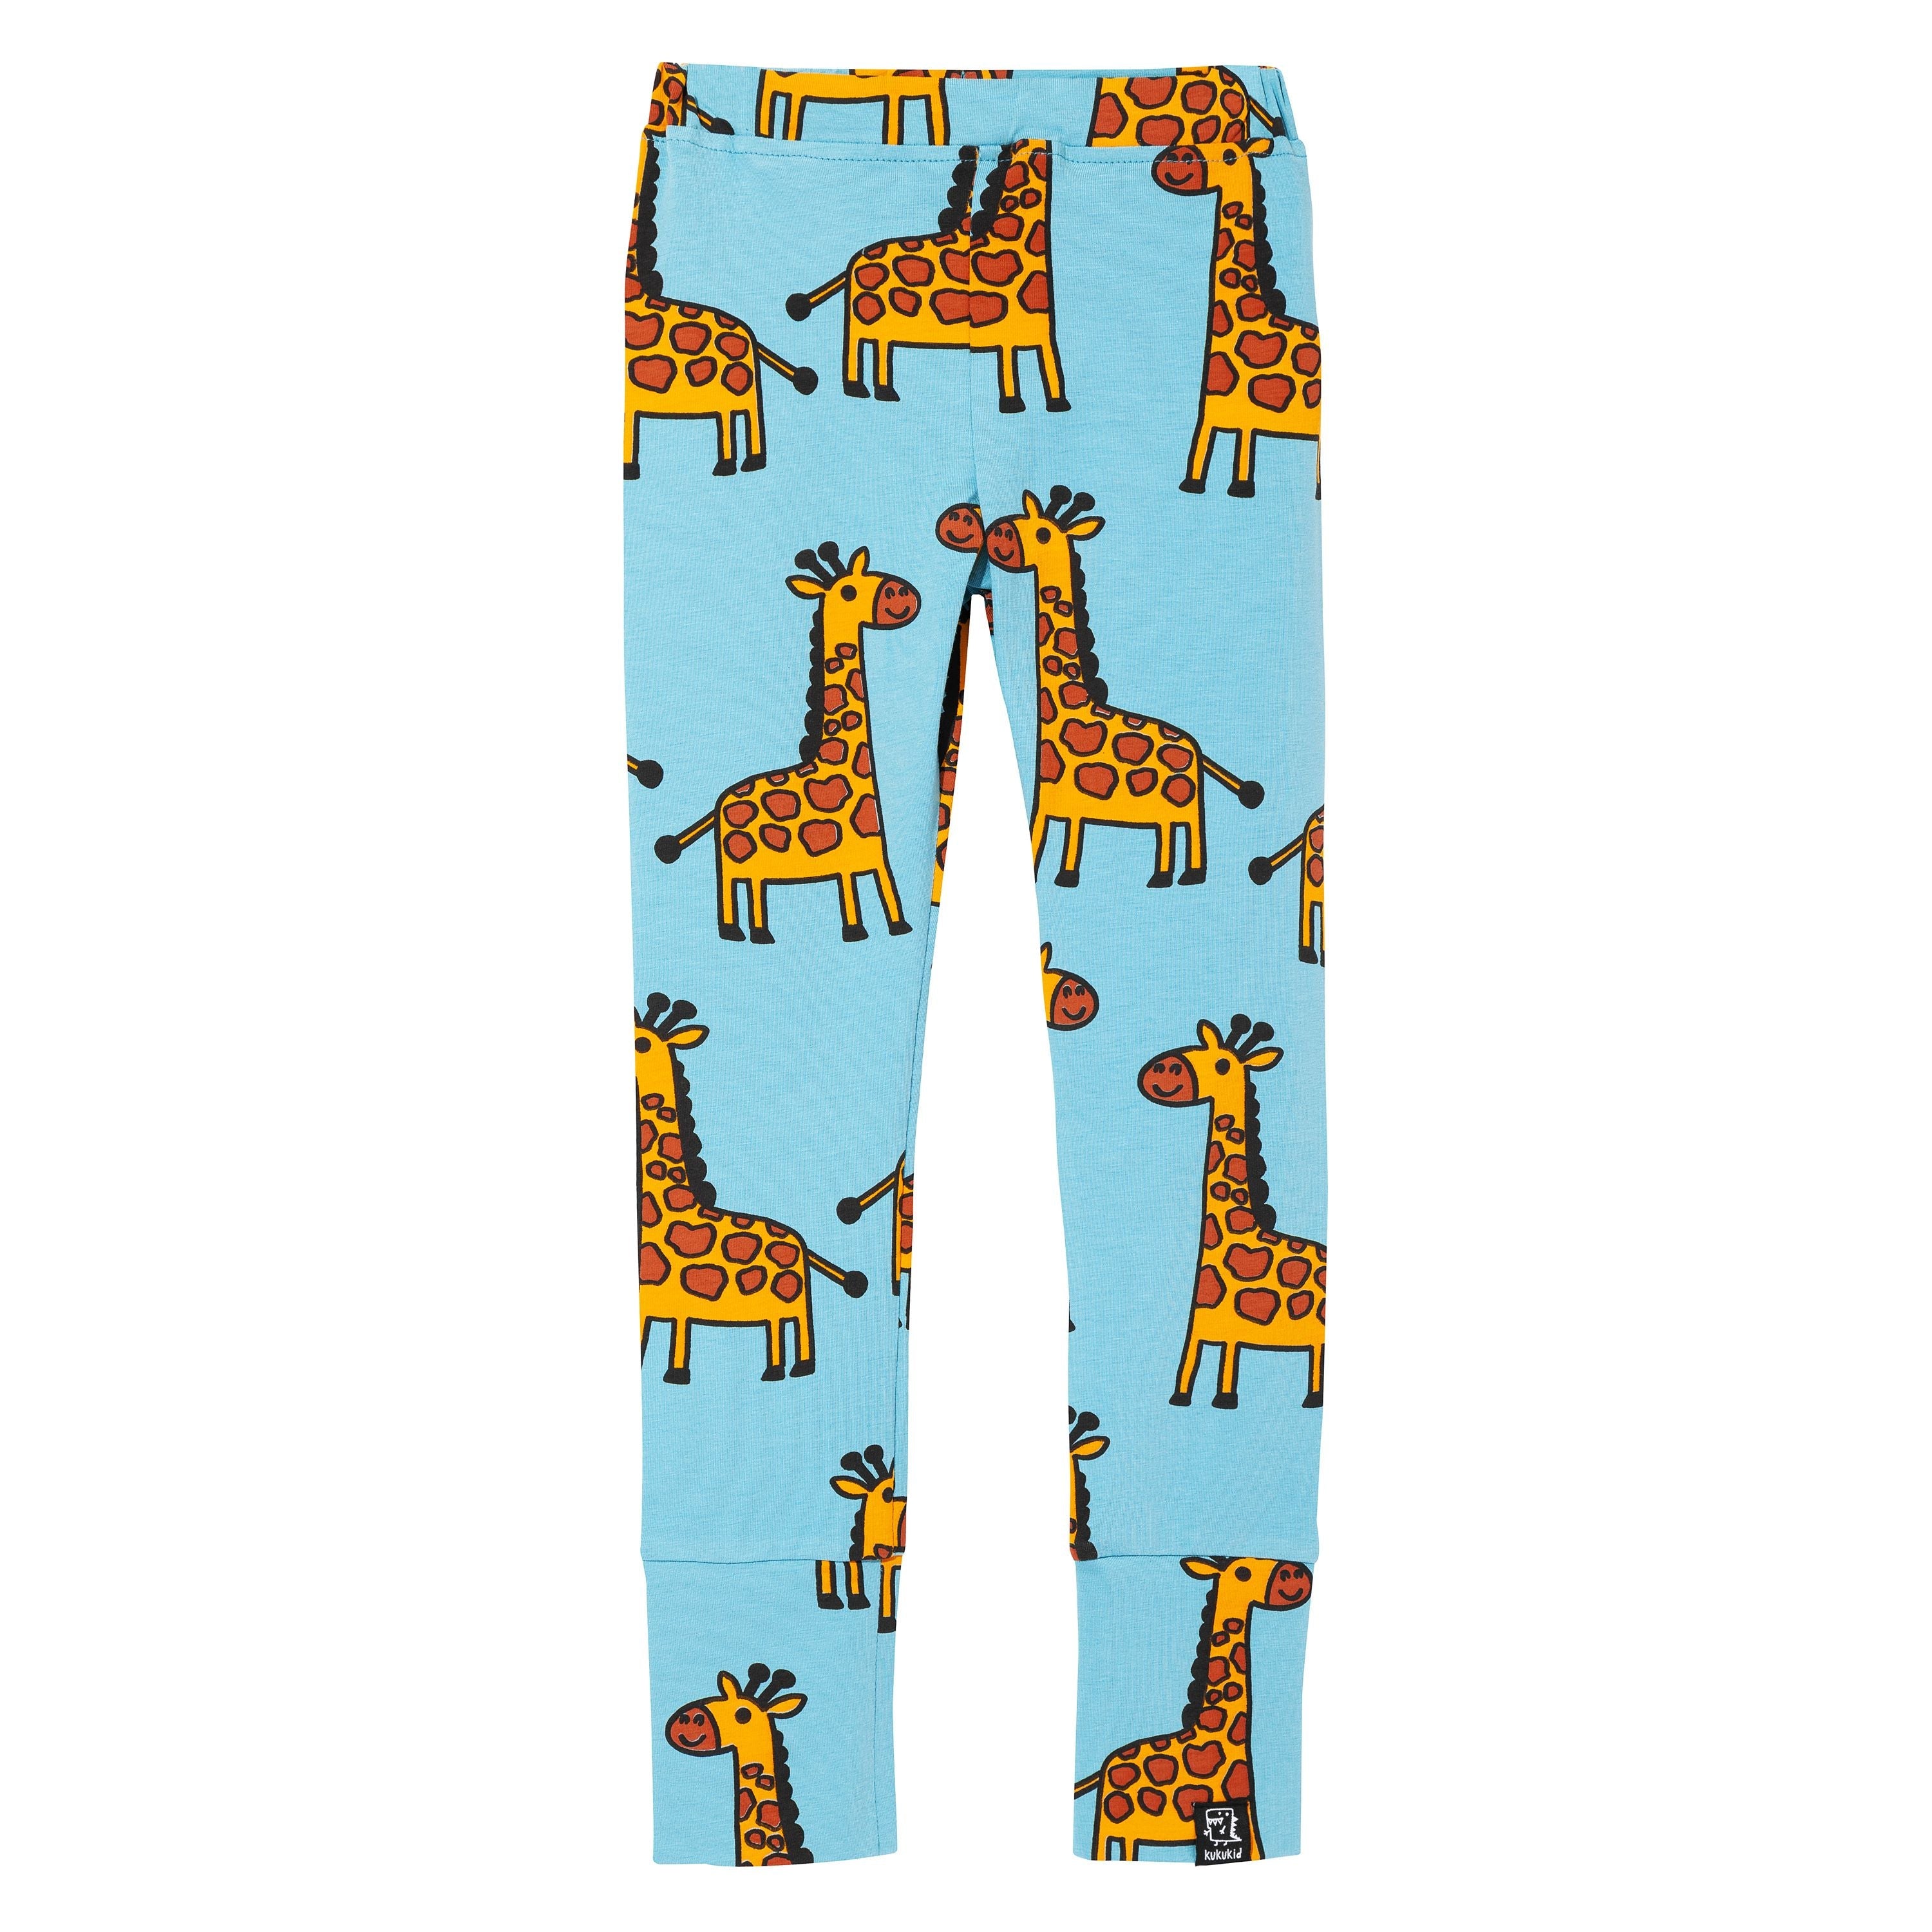 Blue Giraffe Leggings - 1 Left Size 10-12 years